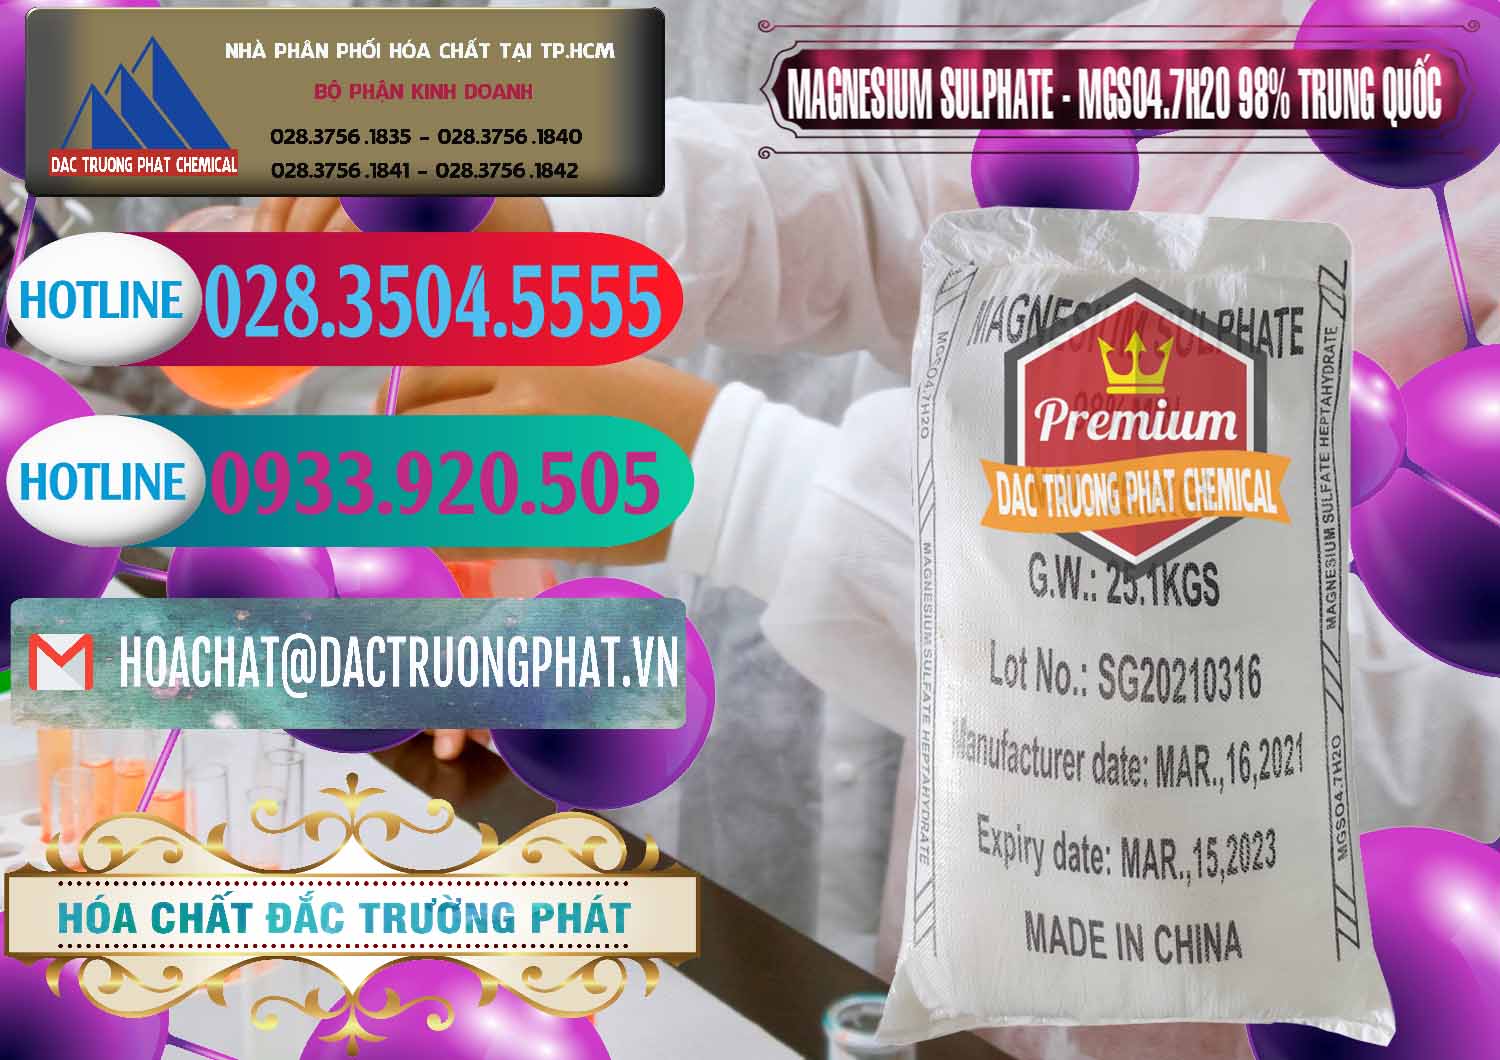 Đơn vị chuyên cung ứng ( bán ) MGSO4.7H2O – Magnesium Sulphate 98% Trung Quốc China - 0229 - Công ty nhập khẩu và cung cấp hóa chất tại TP.HCM - truongphat.vn